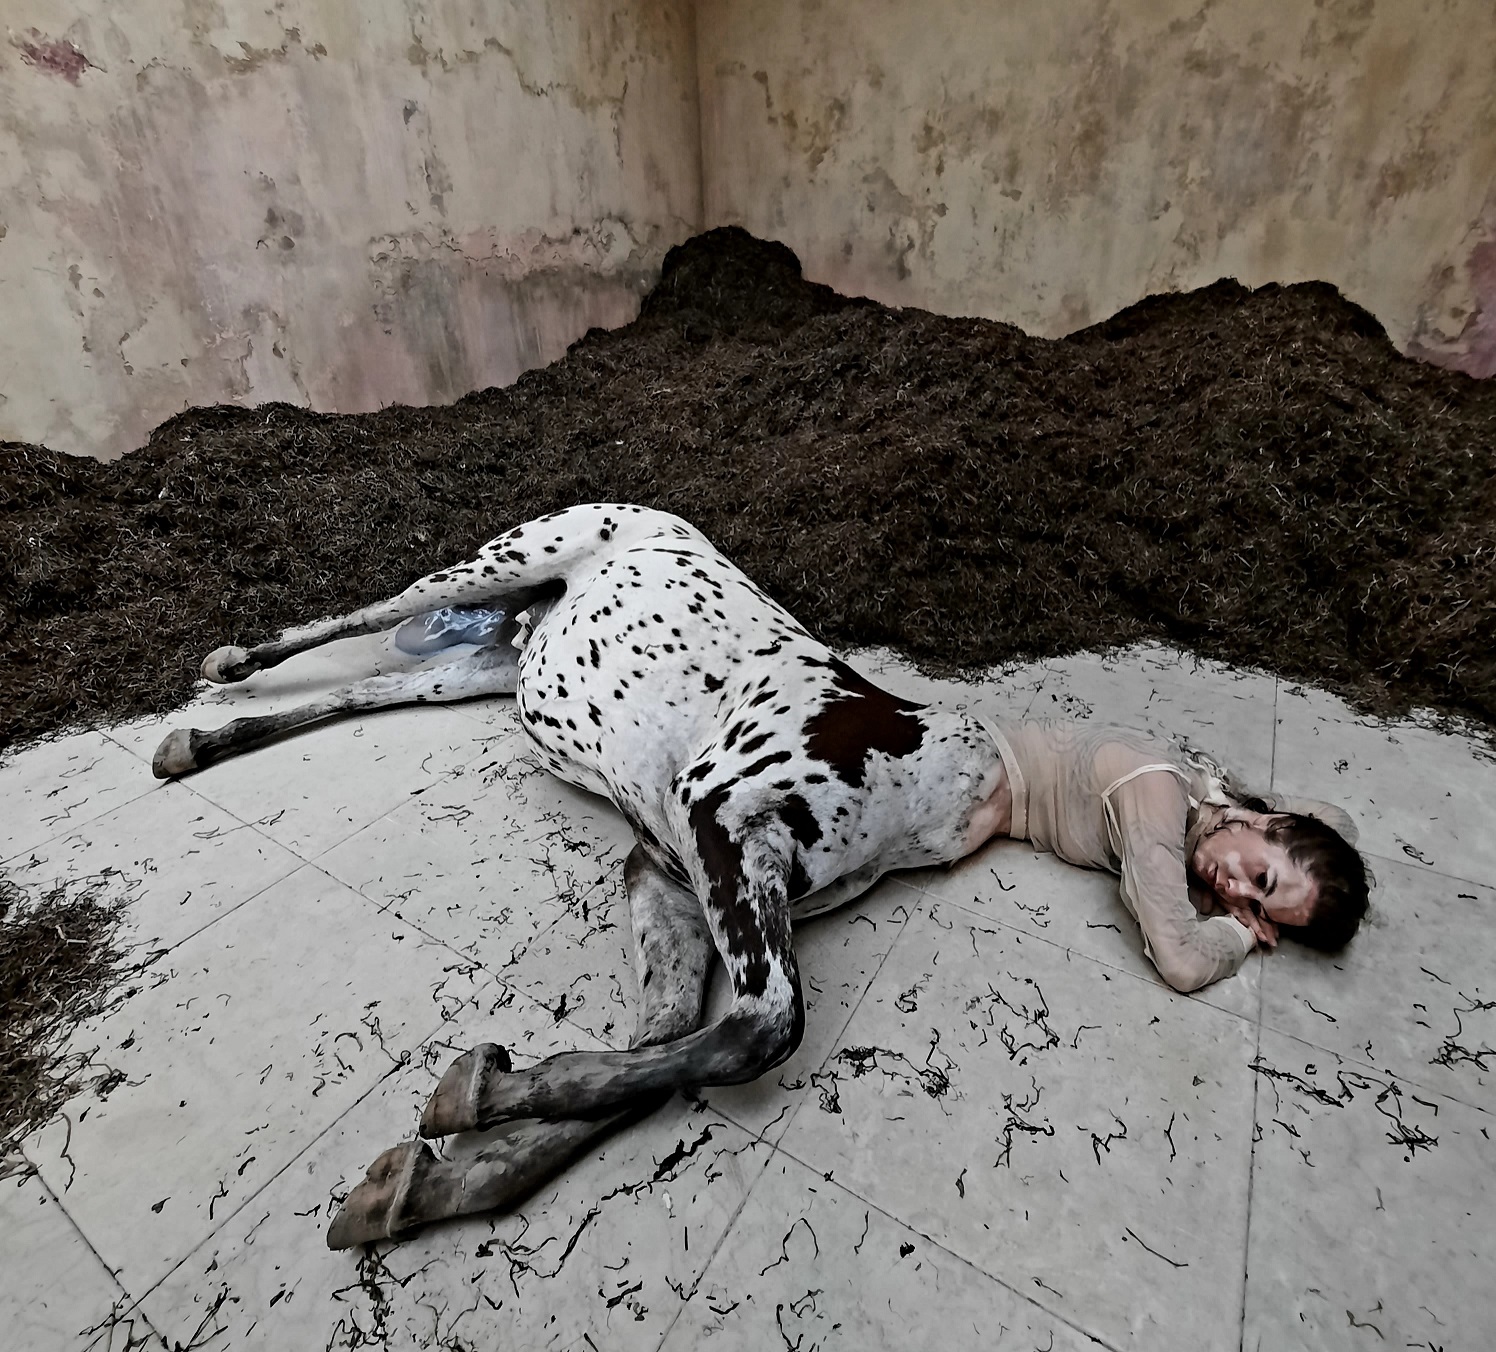 L'immagine mostra una delle opere esposte alla Biennale di Venezia 2022. L'opera in questione, "We walked the earth", esposta nel padiglione danese consiste nella scultura di un centauro adagiato a terra in una stanza le cui pareti sono parzialmente coperte da del terriccio